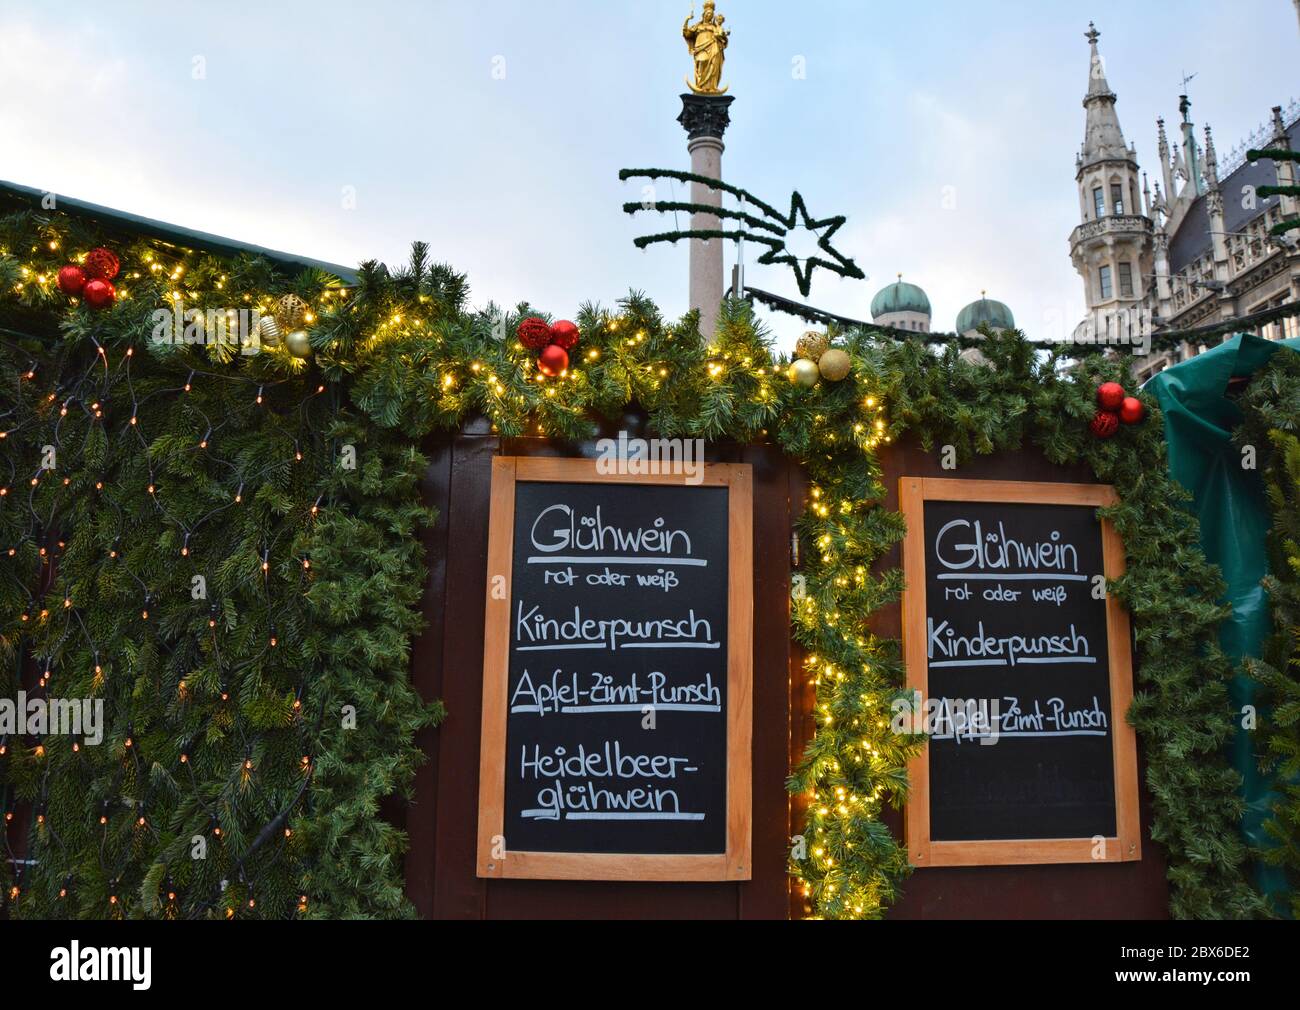 Menú de bebidas navideñas en el mercado navideño de Munich, Alemania Foto de stock